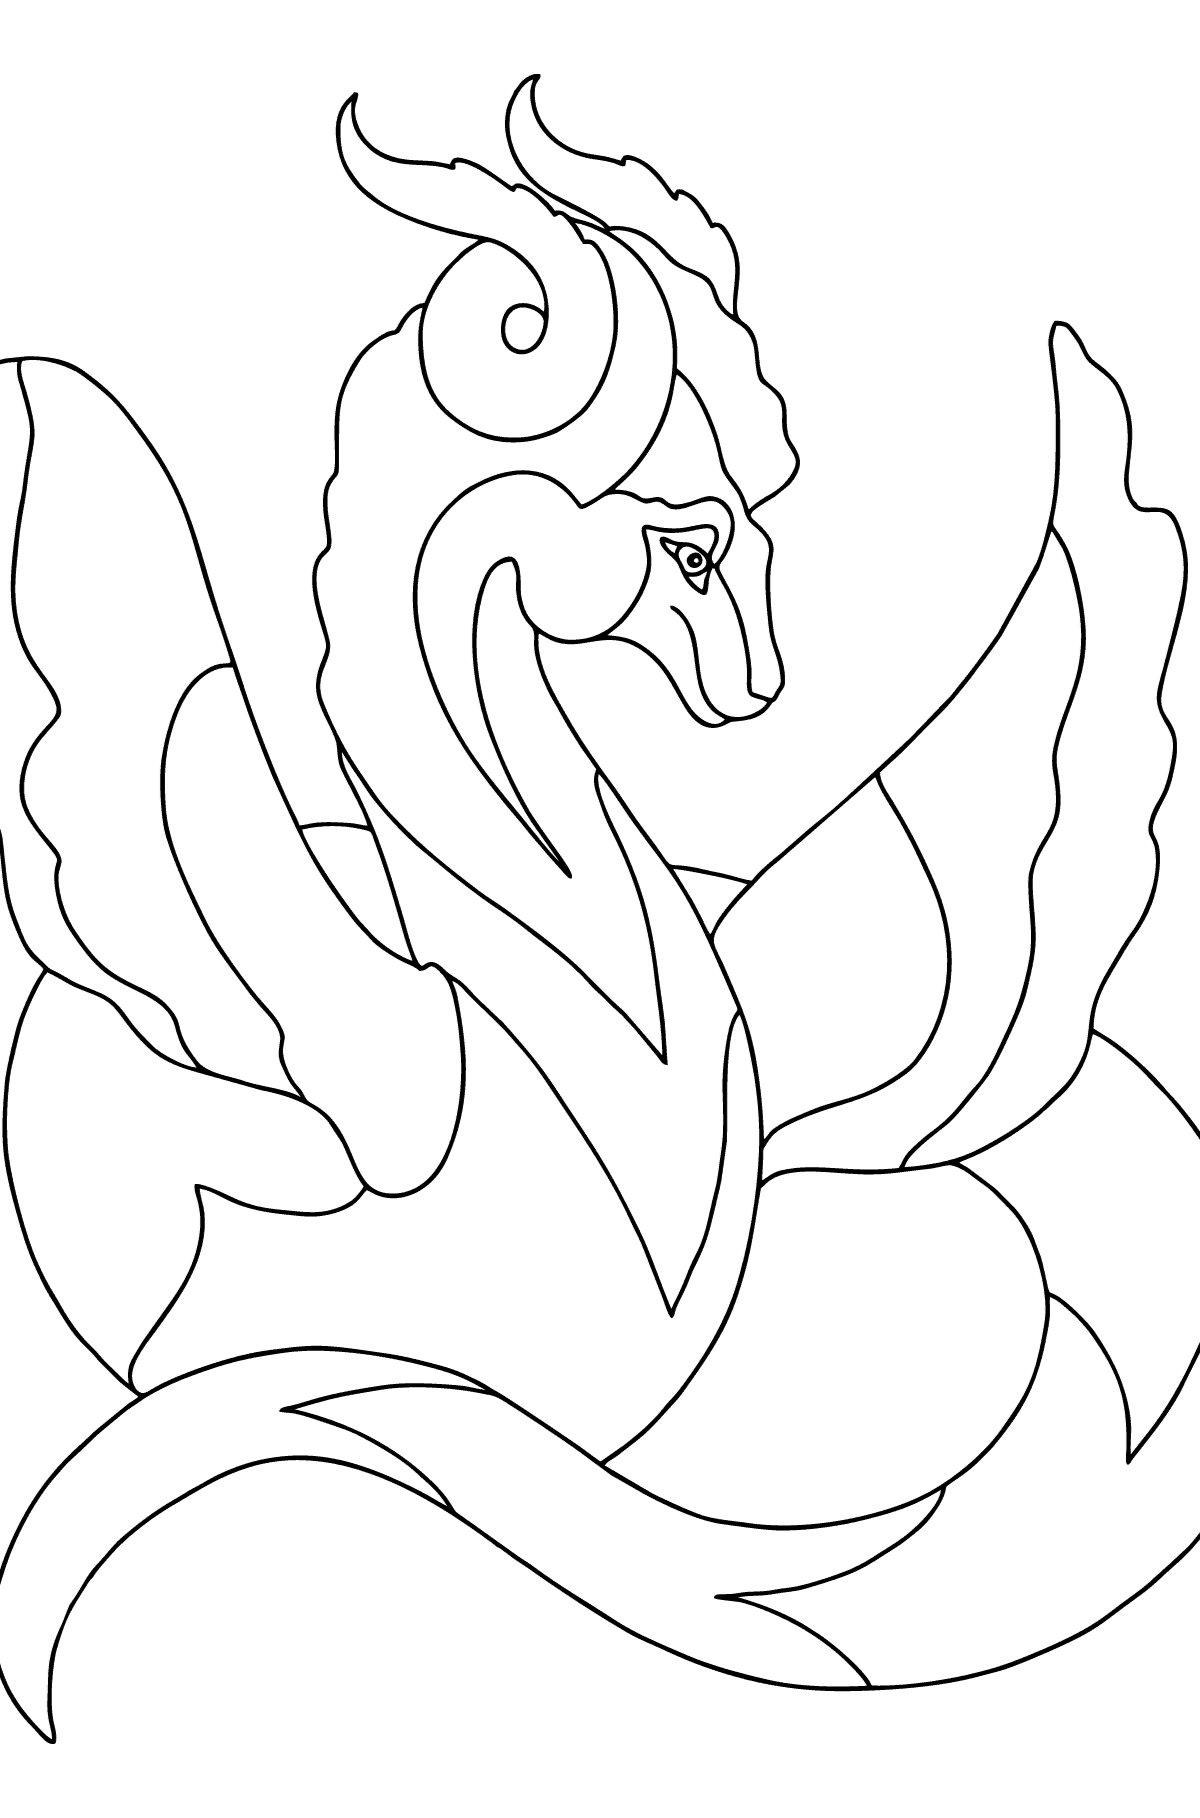 Desen de colorat dragon curcubeu (dificil) - Desene de colorat pentru copii